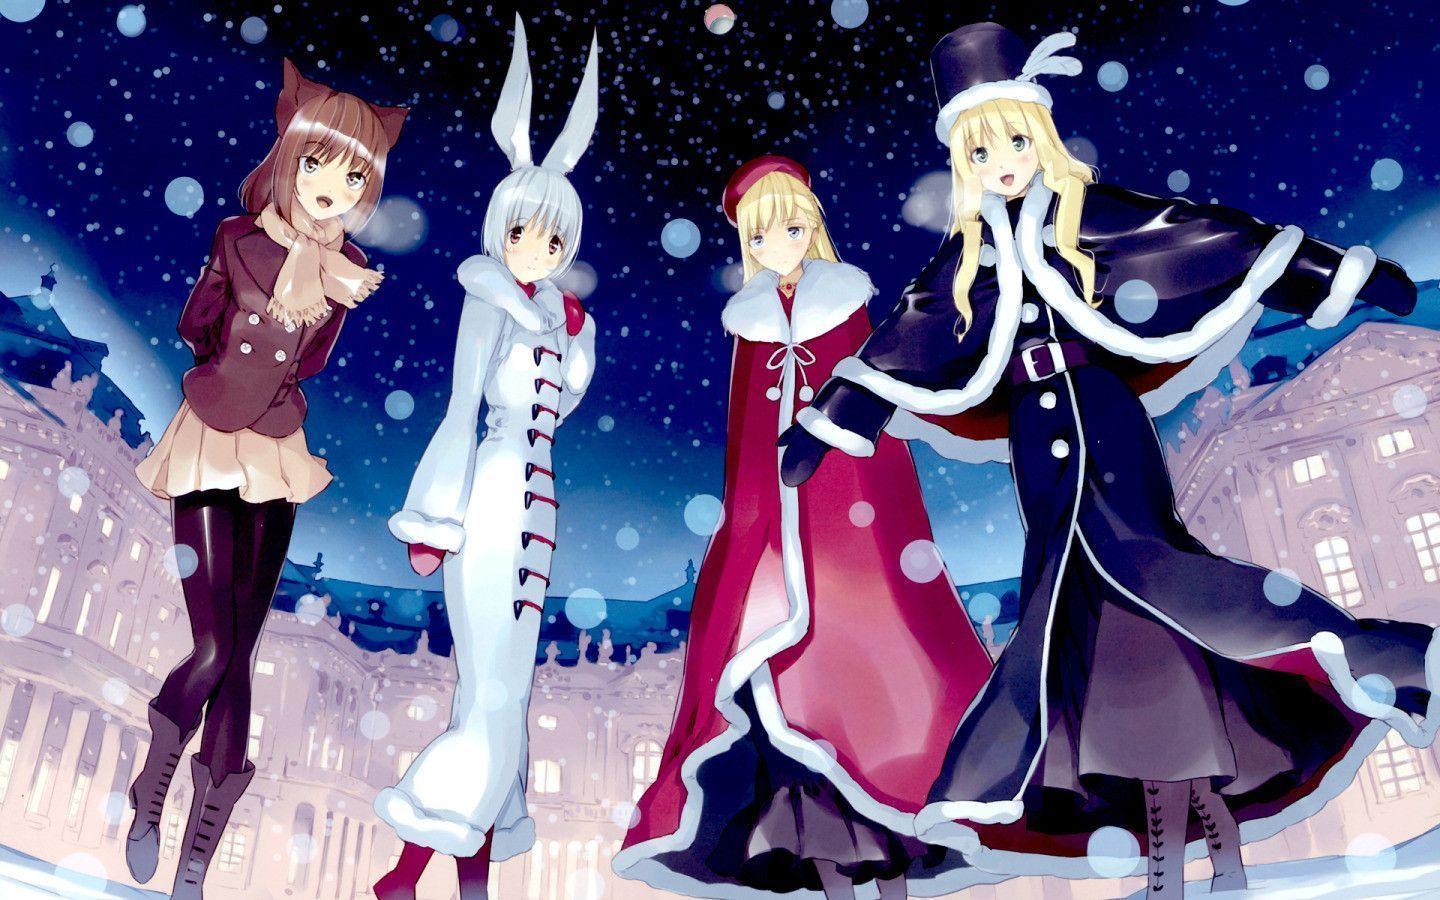 Anime Winter Girls widescreen wallpaper. Wide